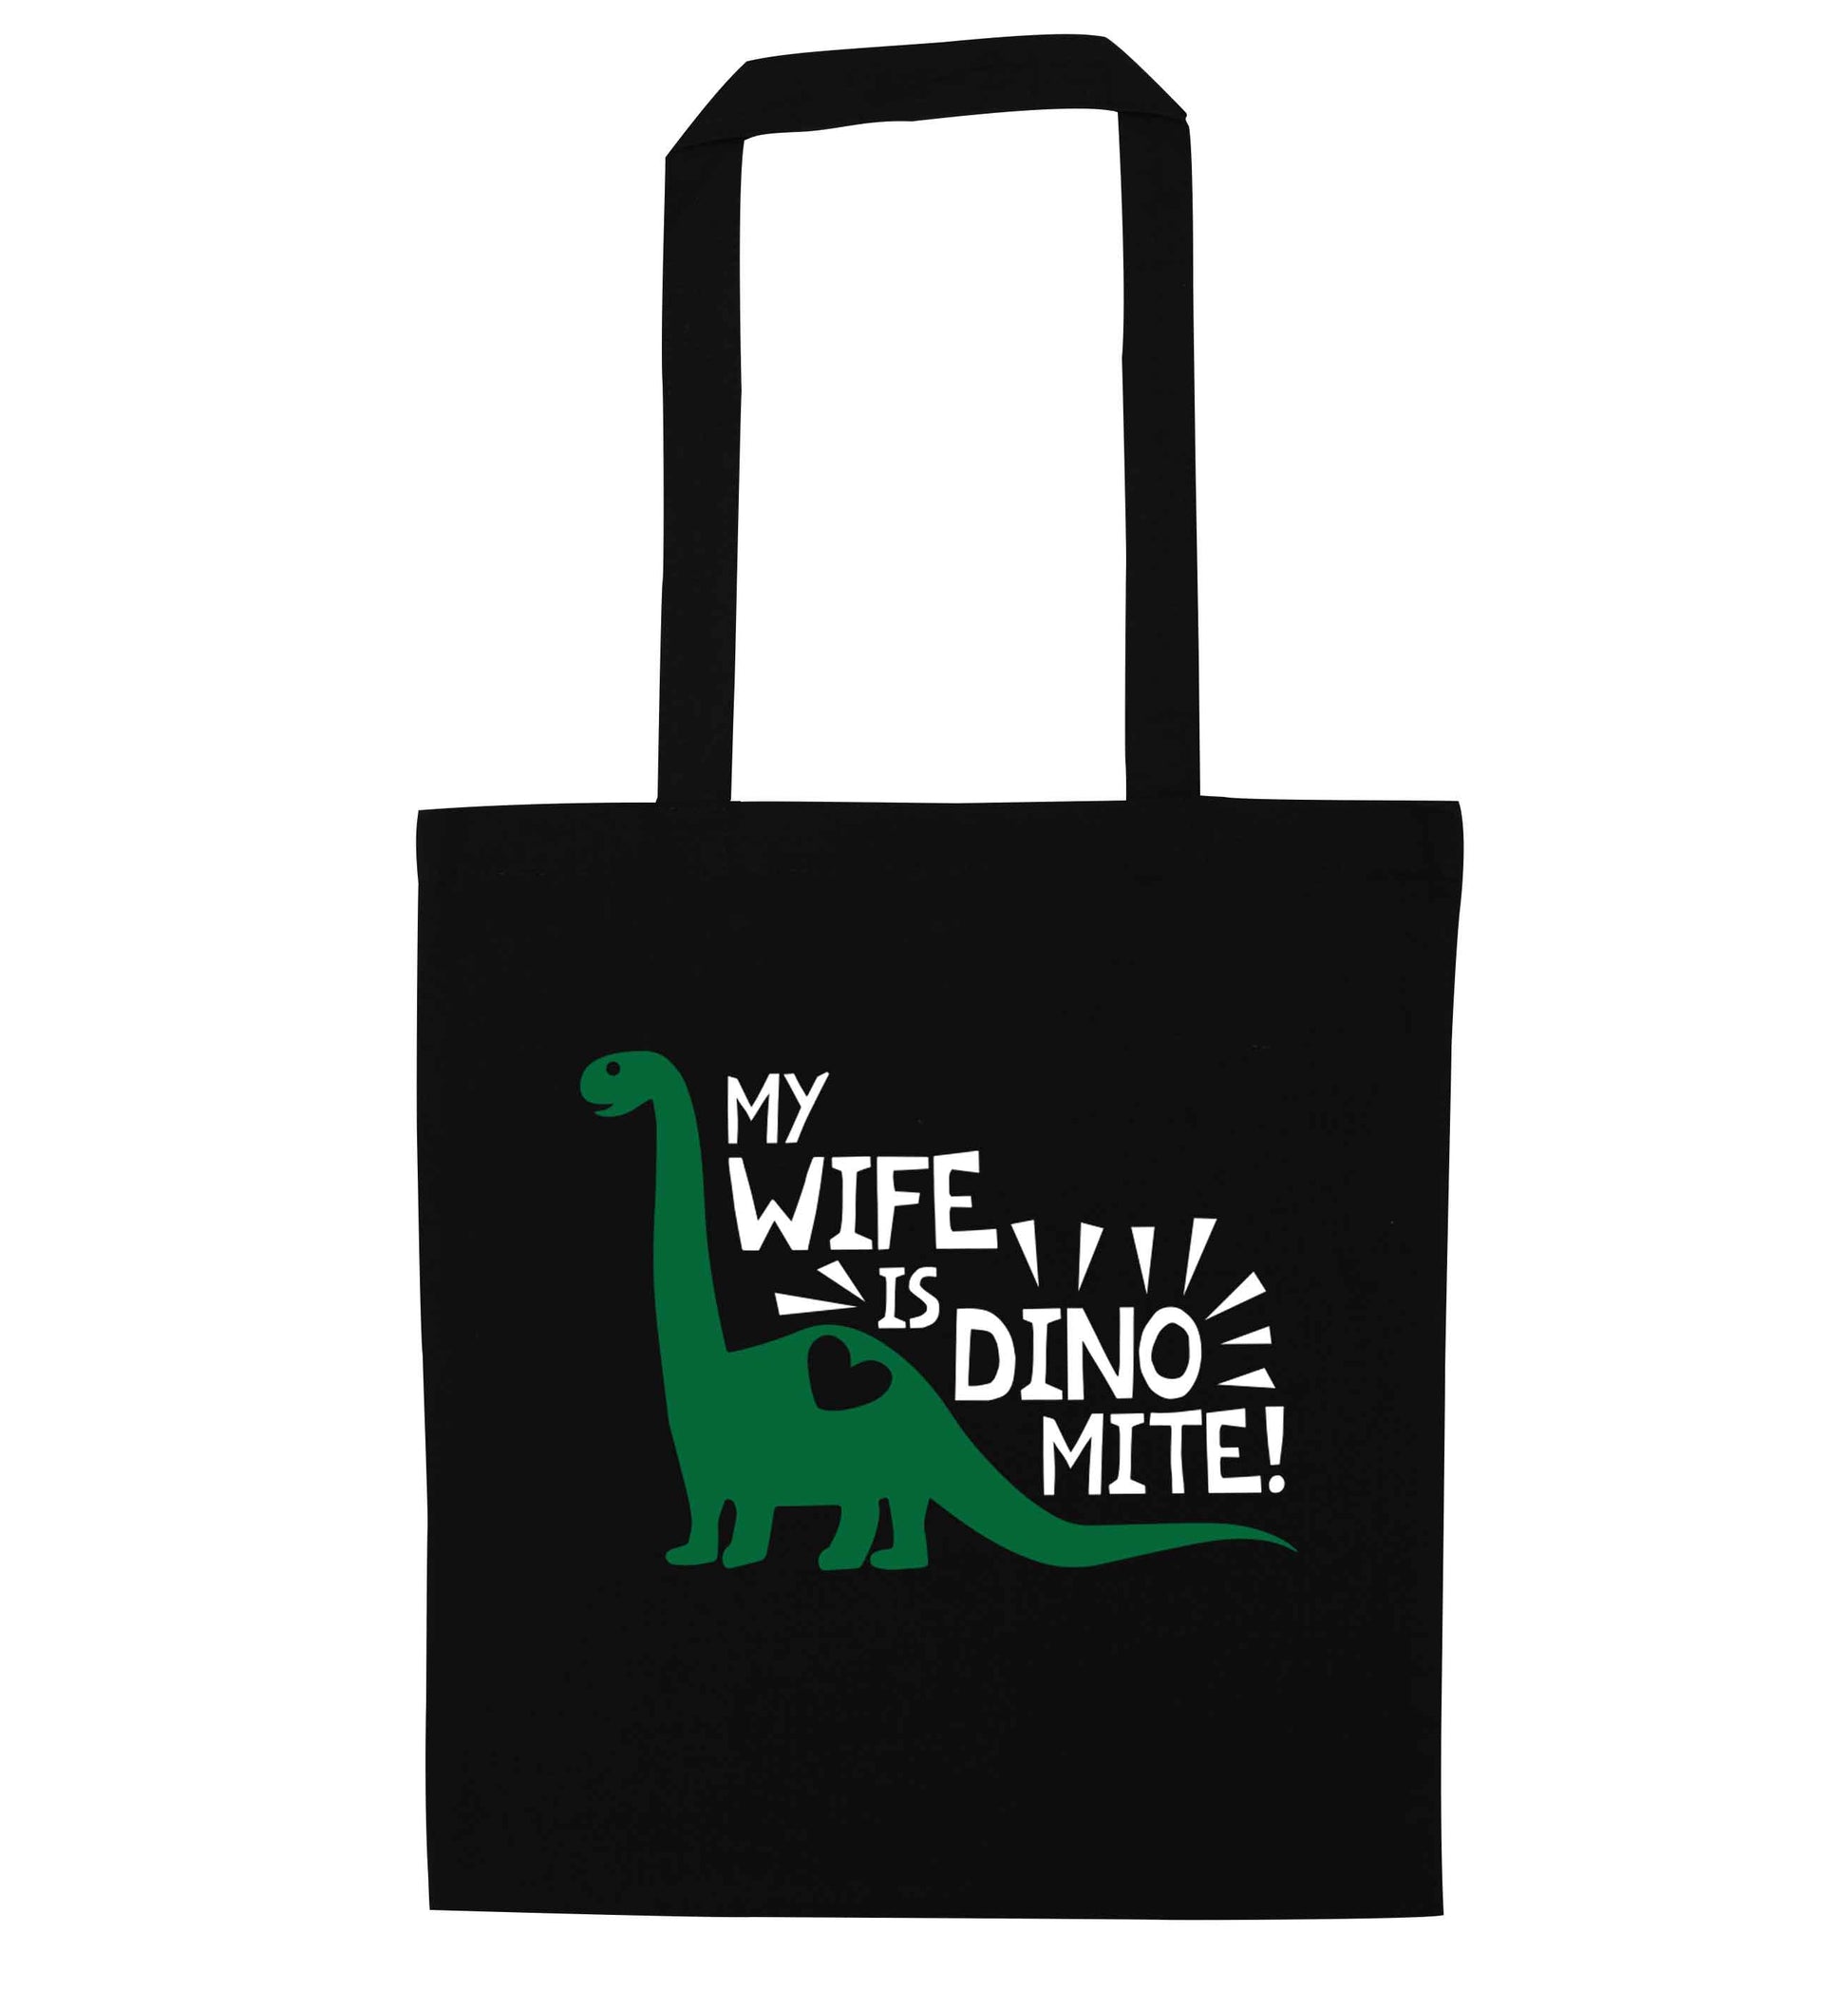 My wife is dinomite! black tote bag